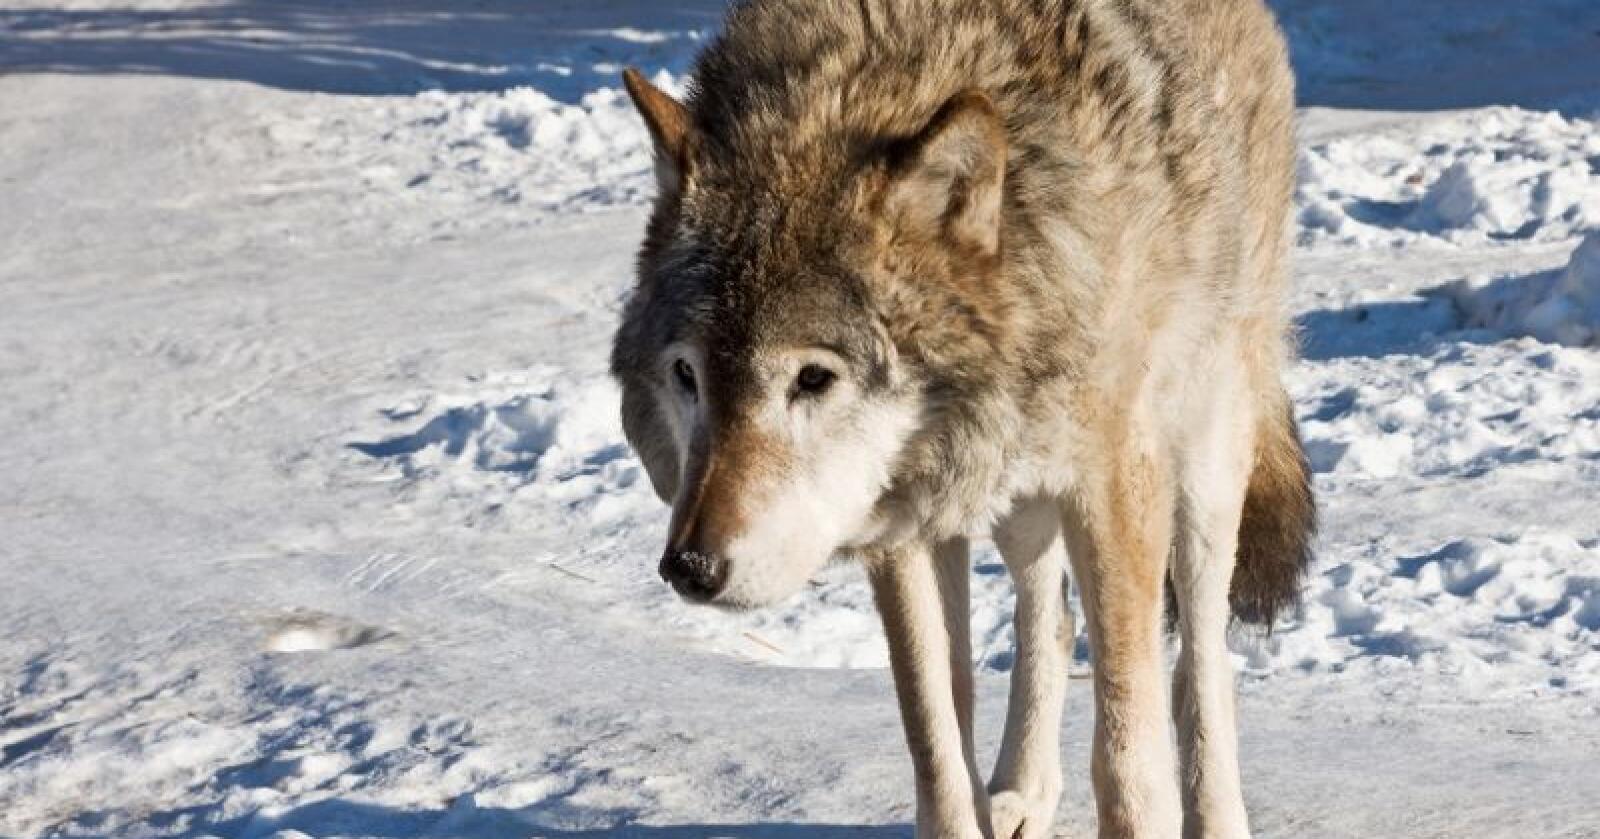 Det er gitt skadefellingstillatelse på én ulv i Finnmark. Foto: Colourbox